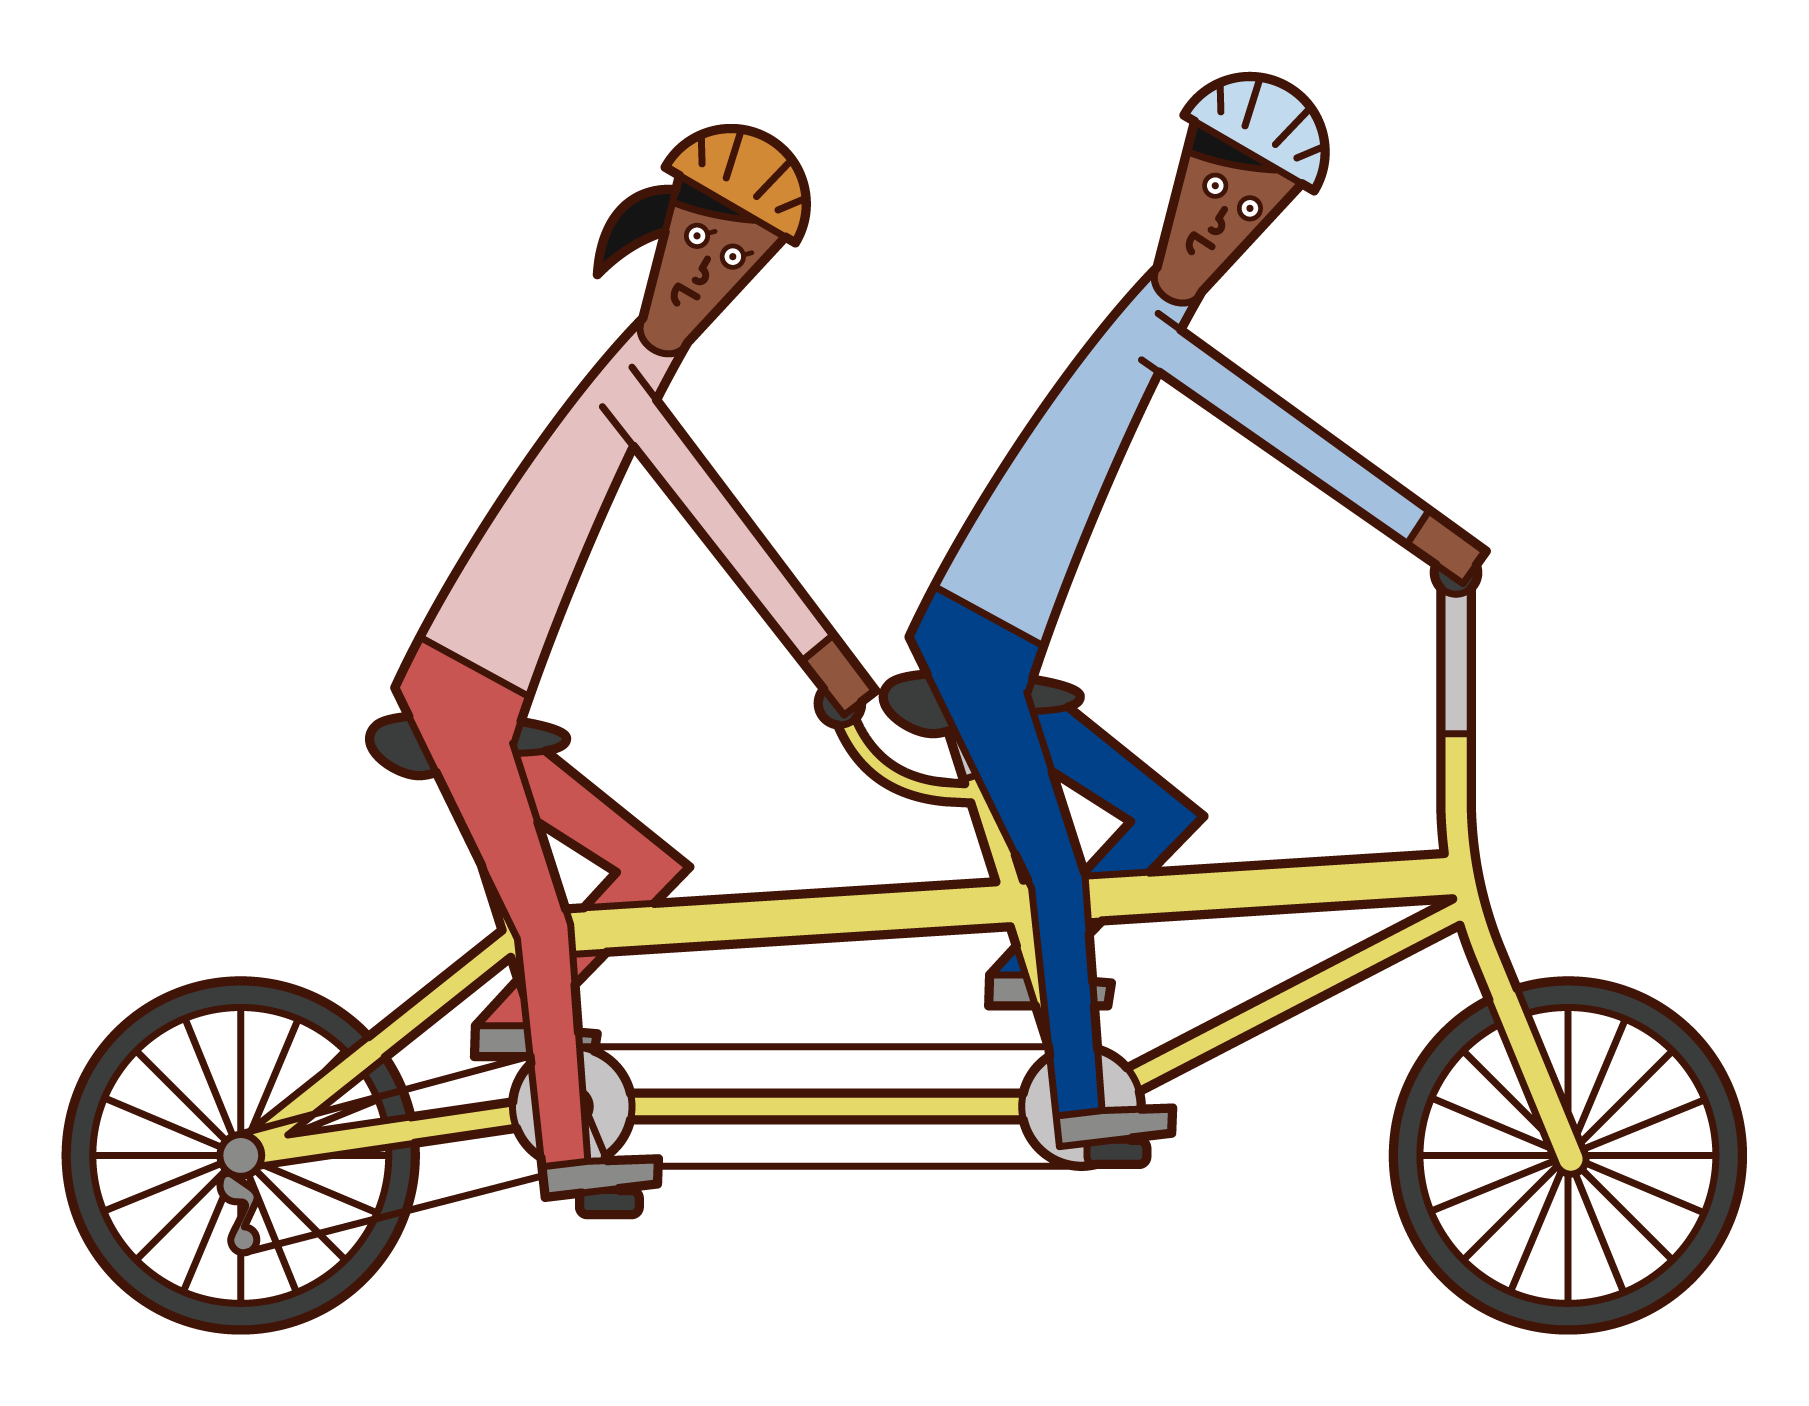 タンデム自転車に乗る人たちのイラスト フリーイラスト素材 Kukukeke ククケケ